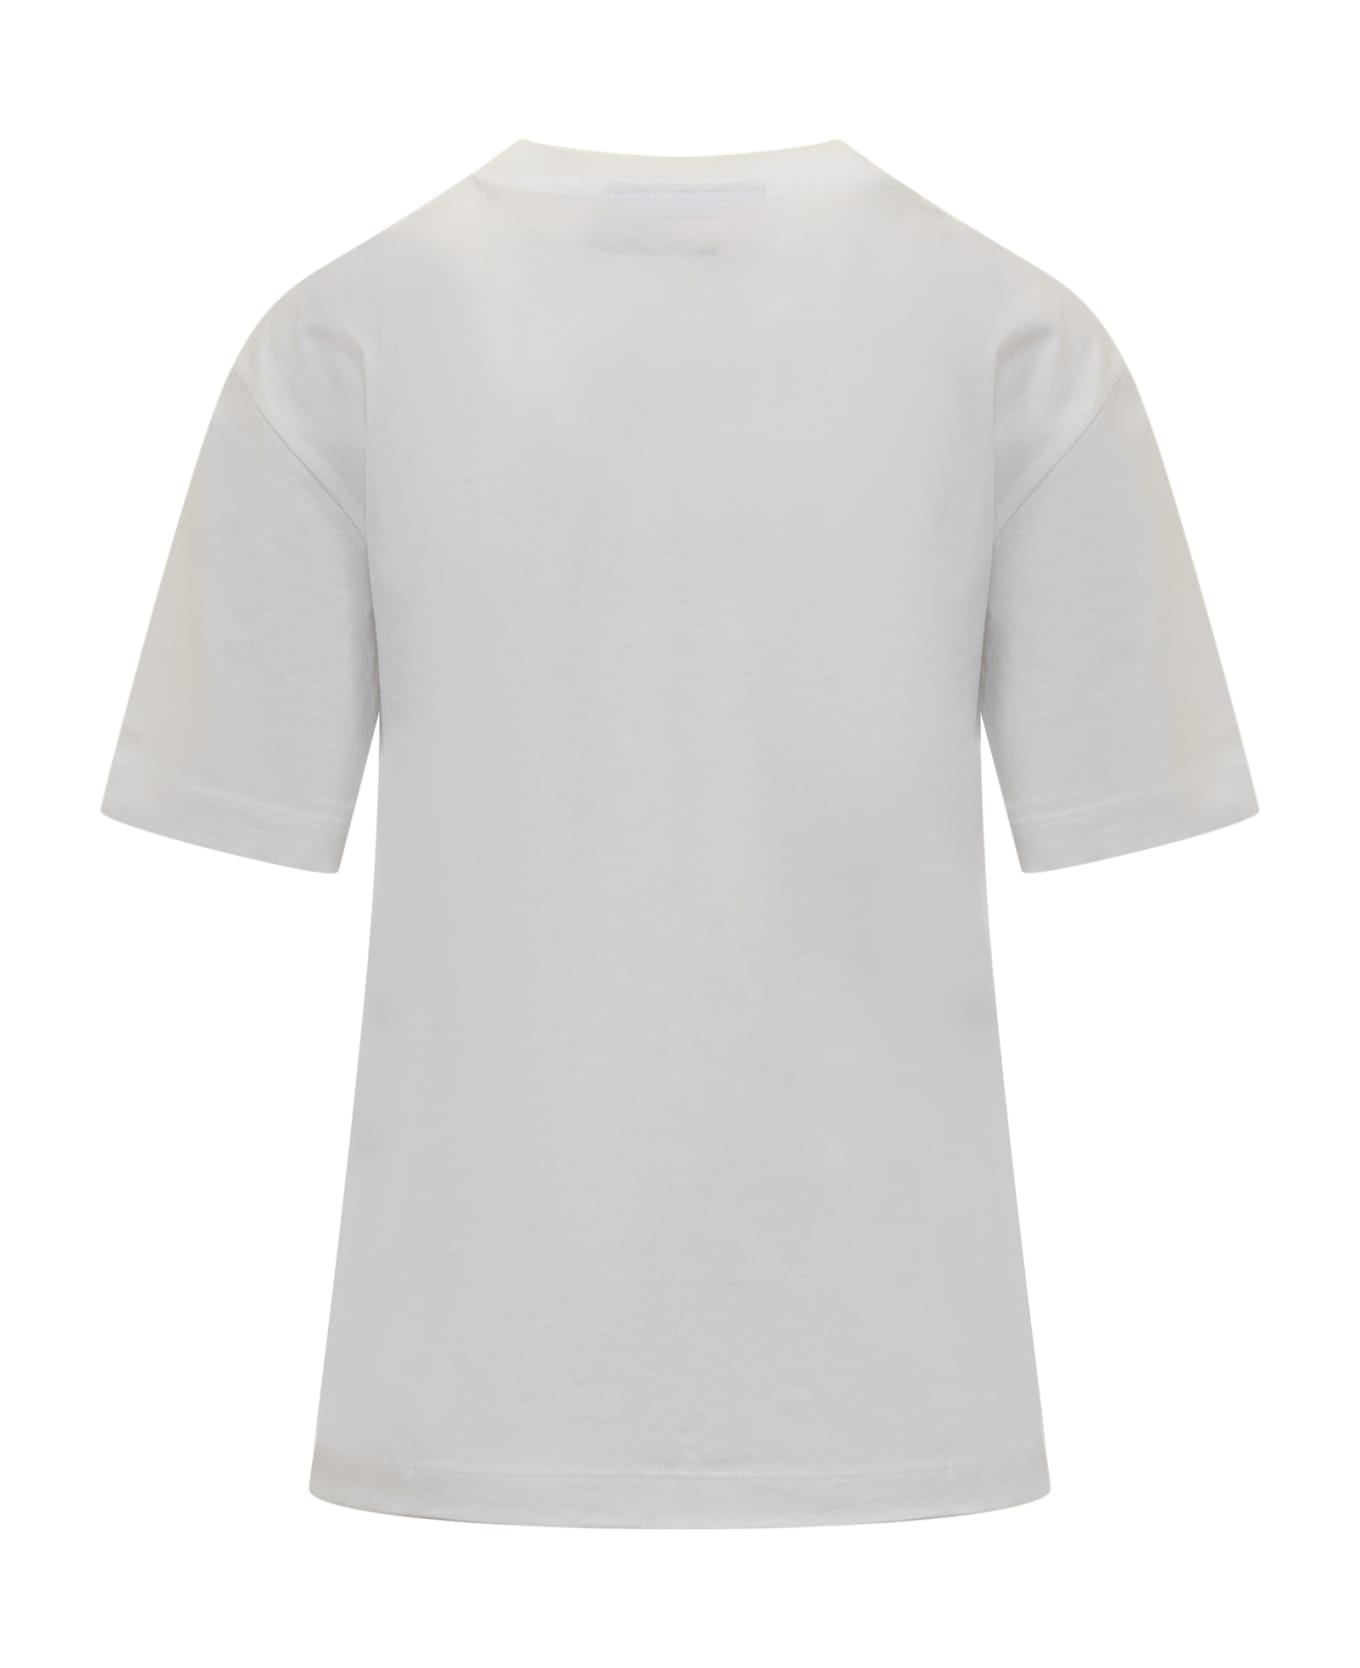 Chiara Ferragni Ferragni 610 T-shirt - White